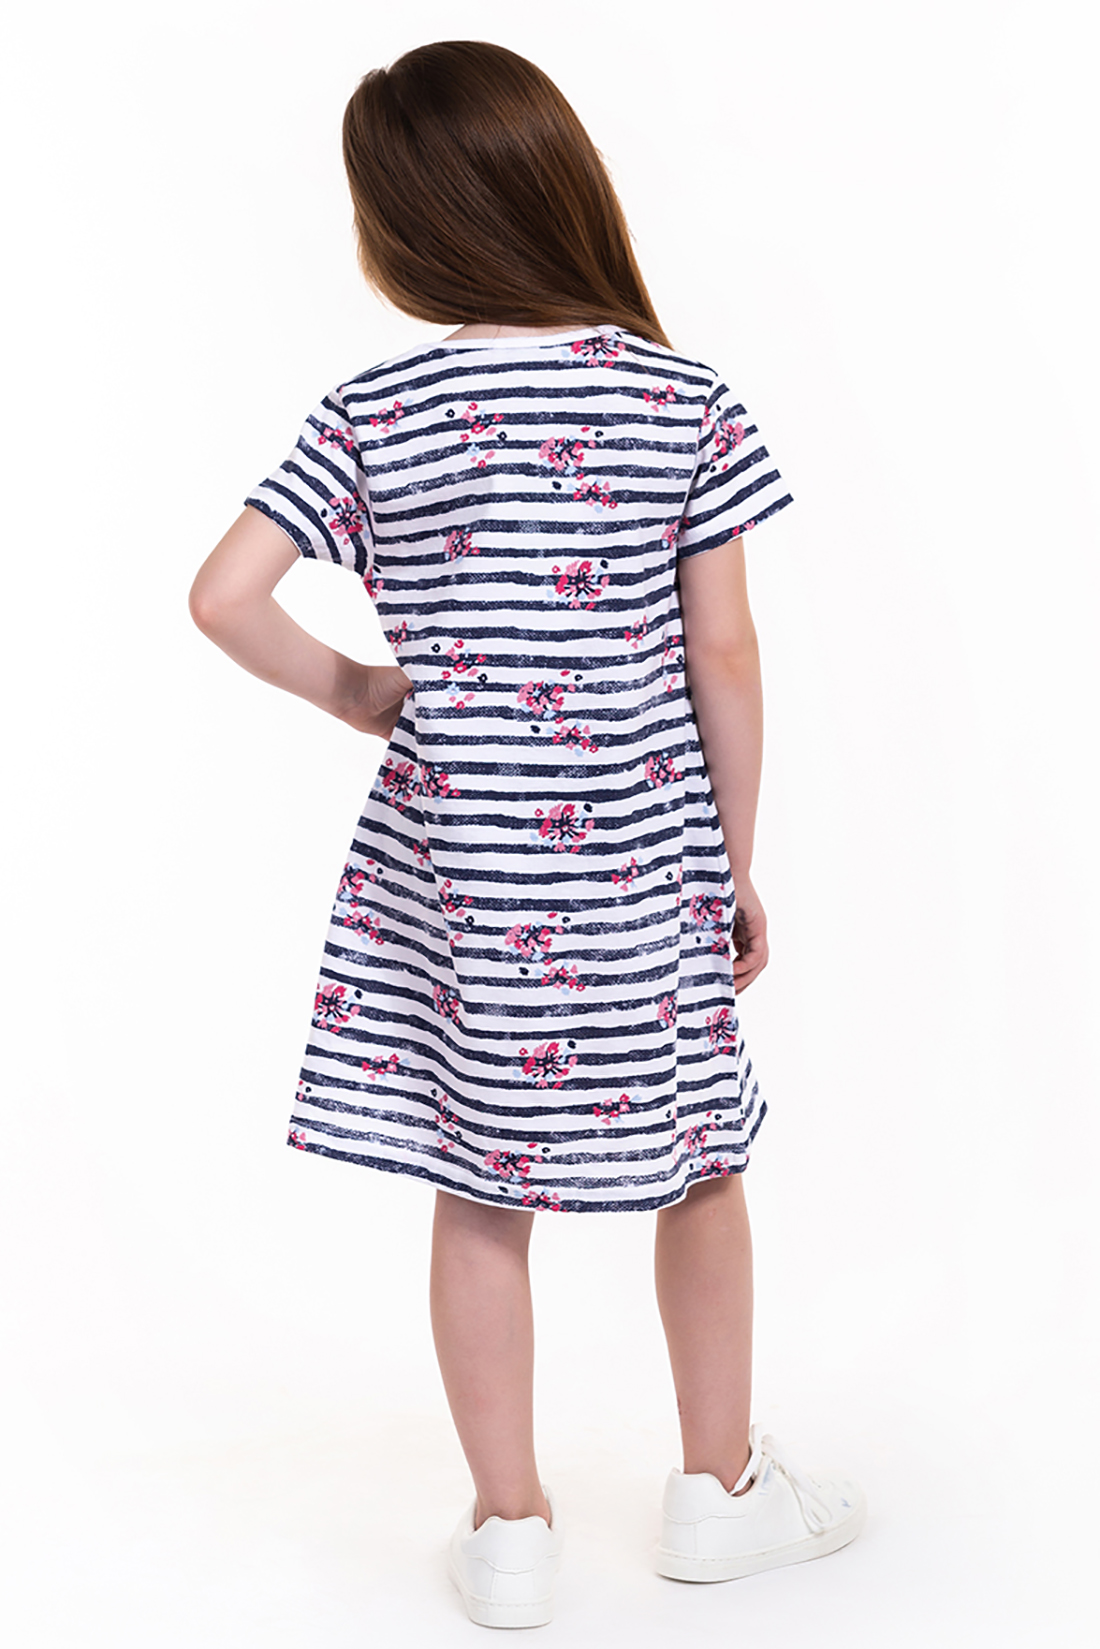 Платье для девочки (арт. baon BK459012), размер 98-104, цвет белый Платье для девочки (арт. baon BK459012) - фото 2